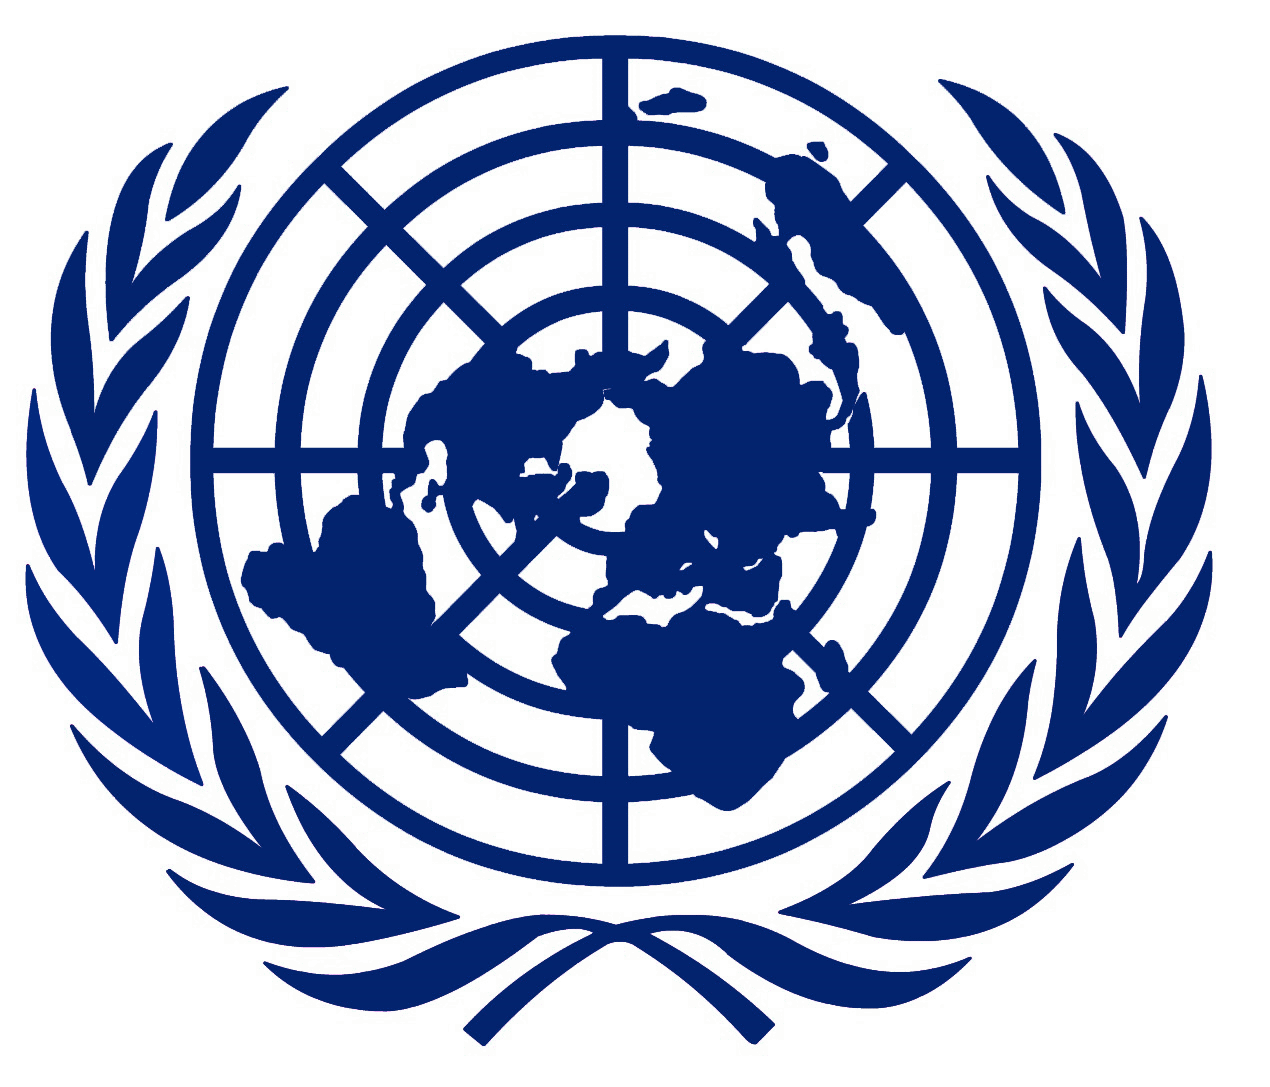 Оон общество. Всемирная организация ООН лого. Совет безопасности ООН логотип. Совет безопасности ООН символ. Совет безопасности ООН герб.